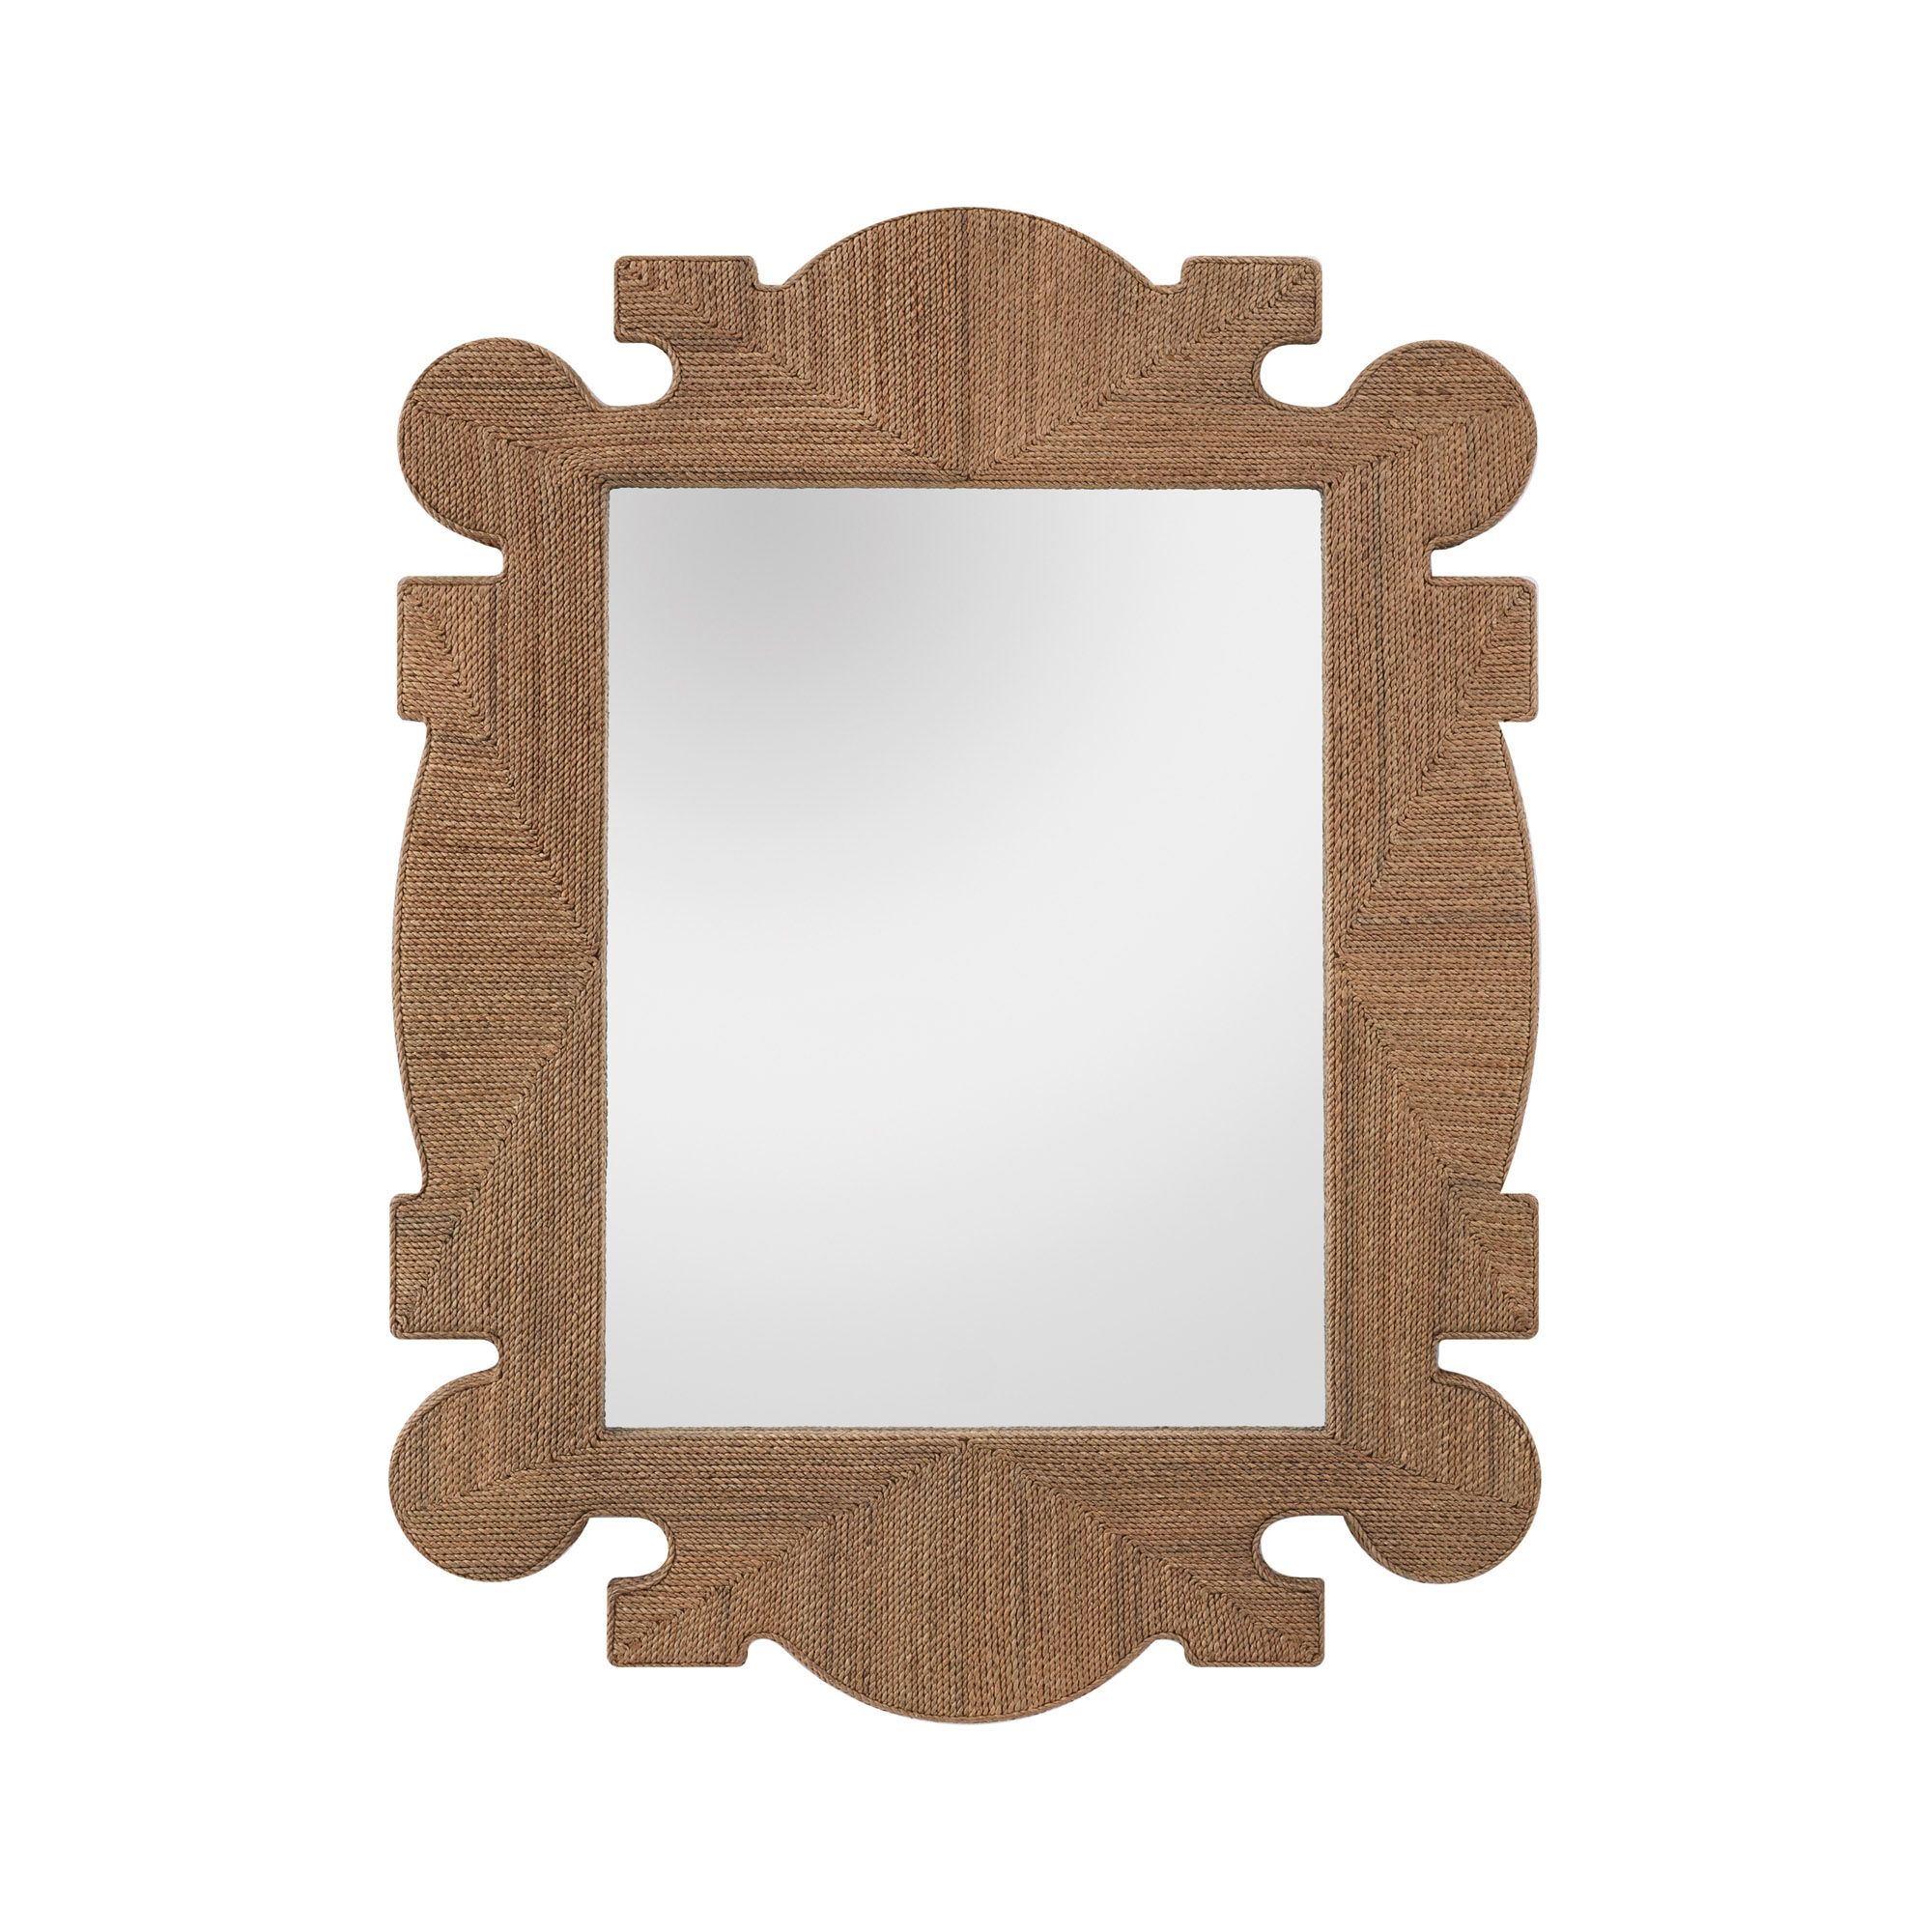 Купить Настенное зеркало Mowgli Mirror в интернет-магазине roooms.ru